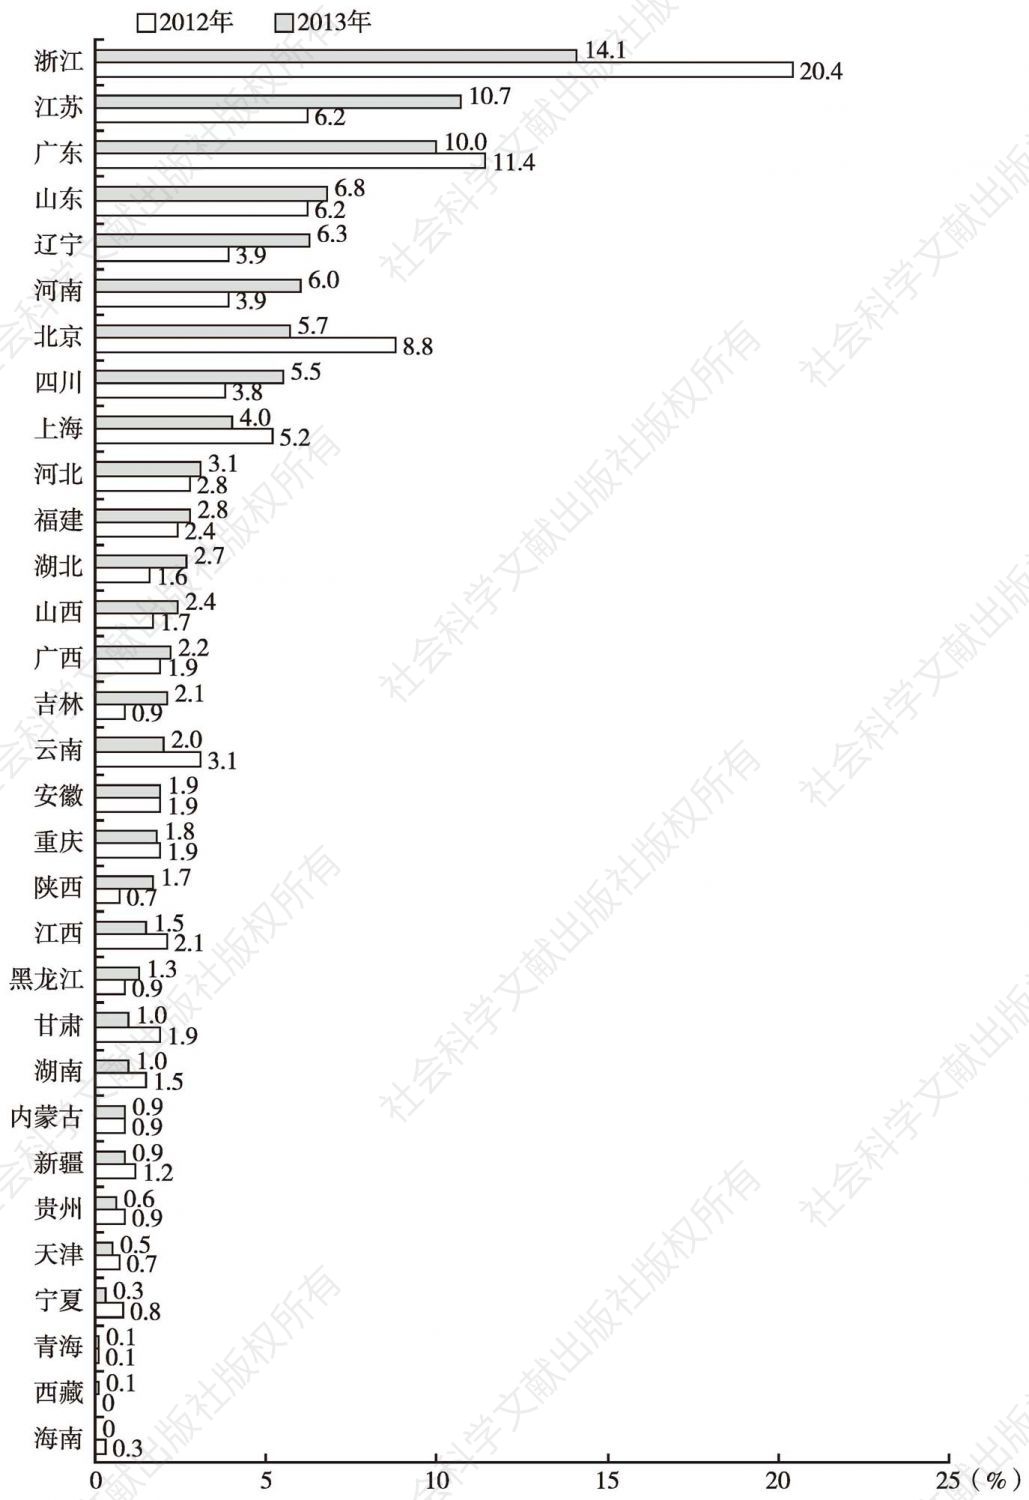 图3 党政机构微博客样本库中各省（自治区、直辖市）占比